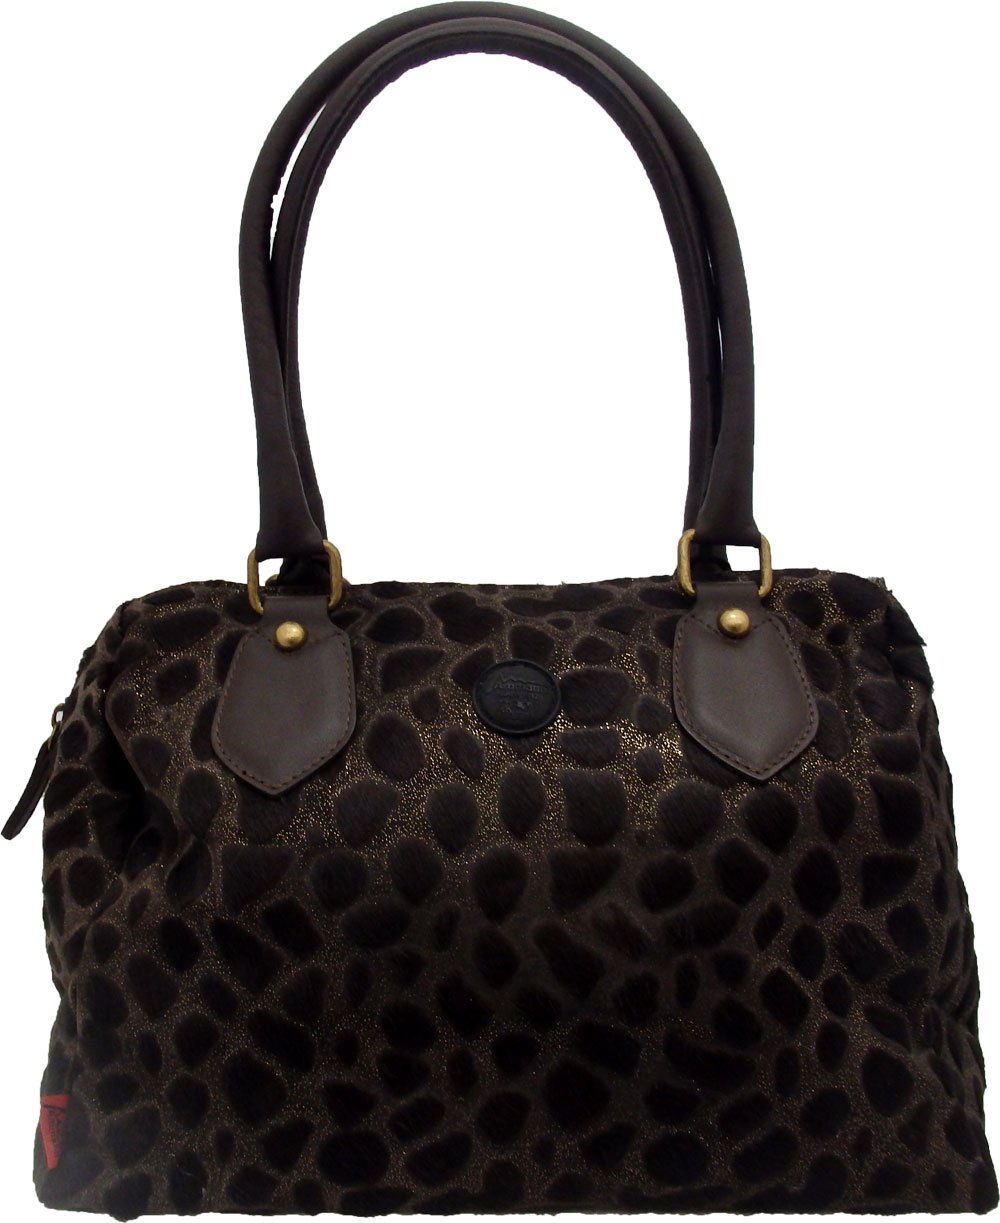 Handtasche aus Fell von Ammann ghepardo braun